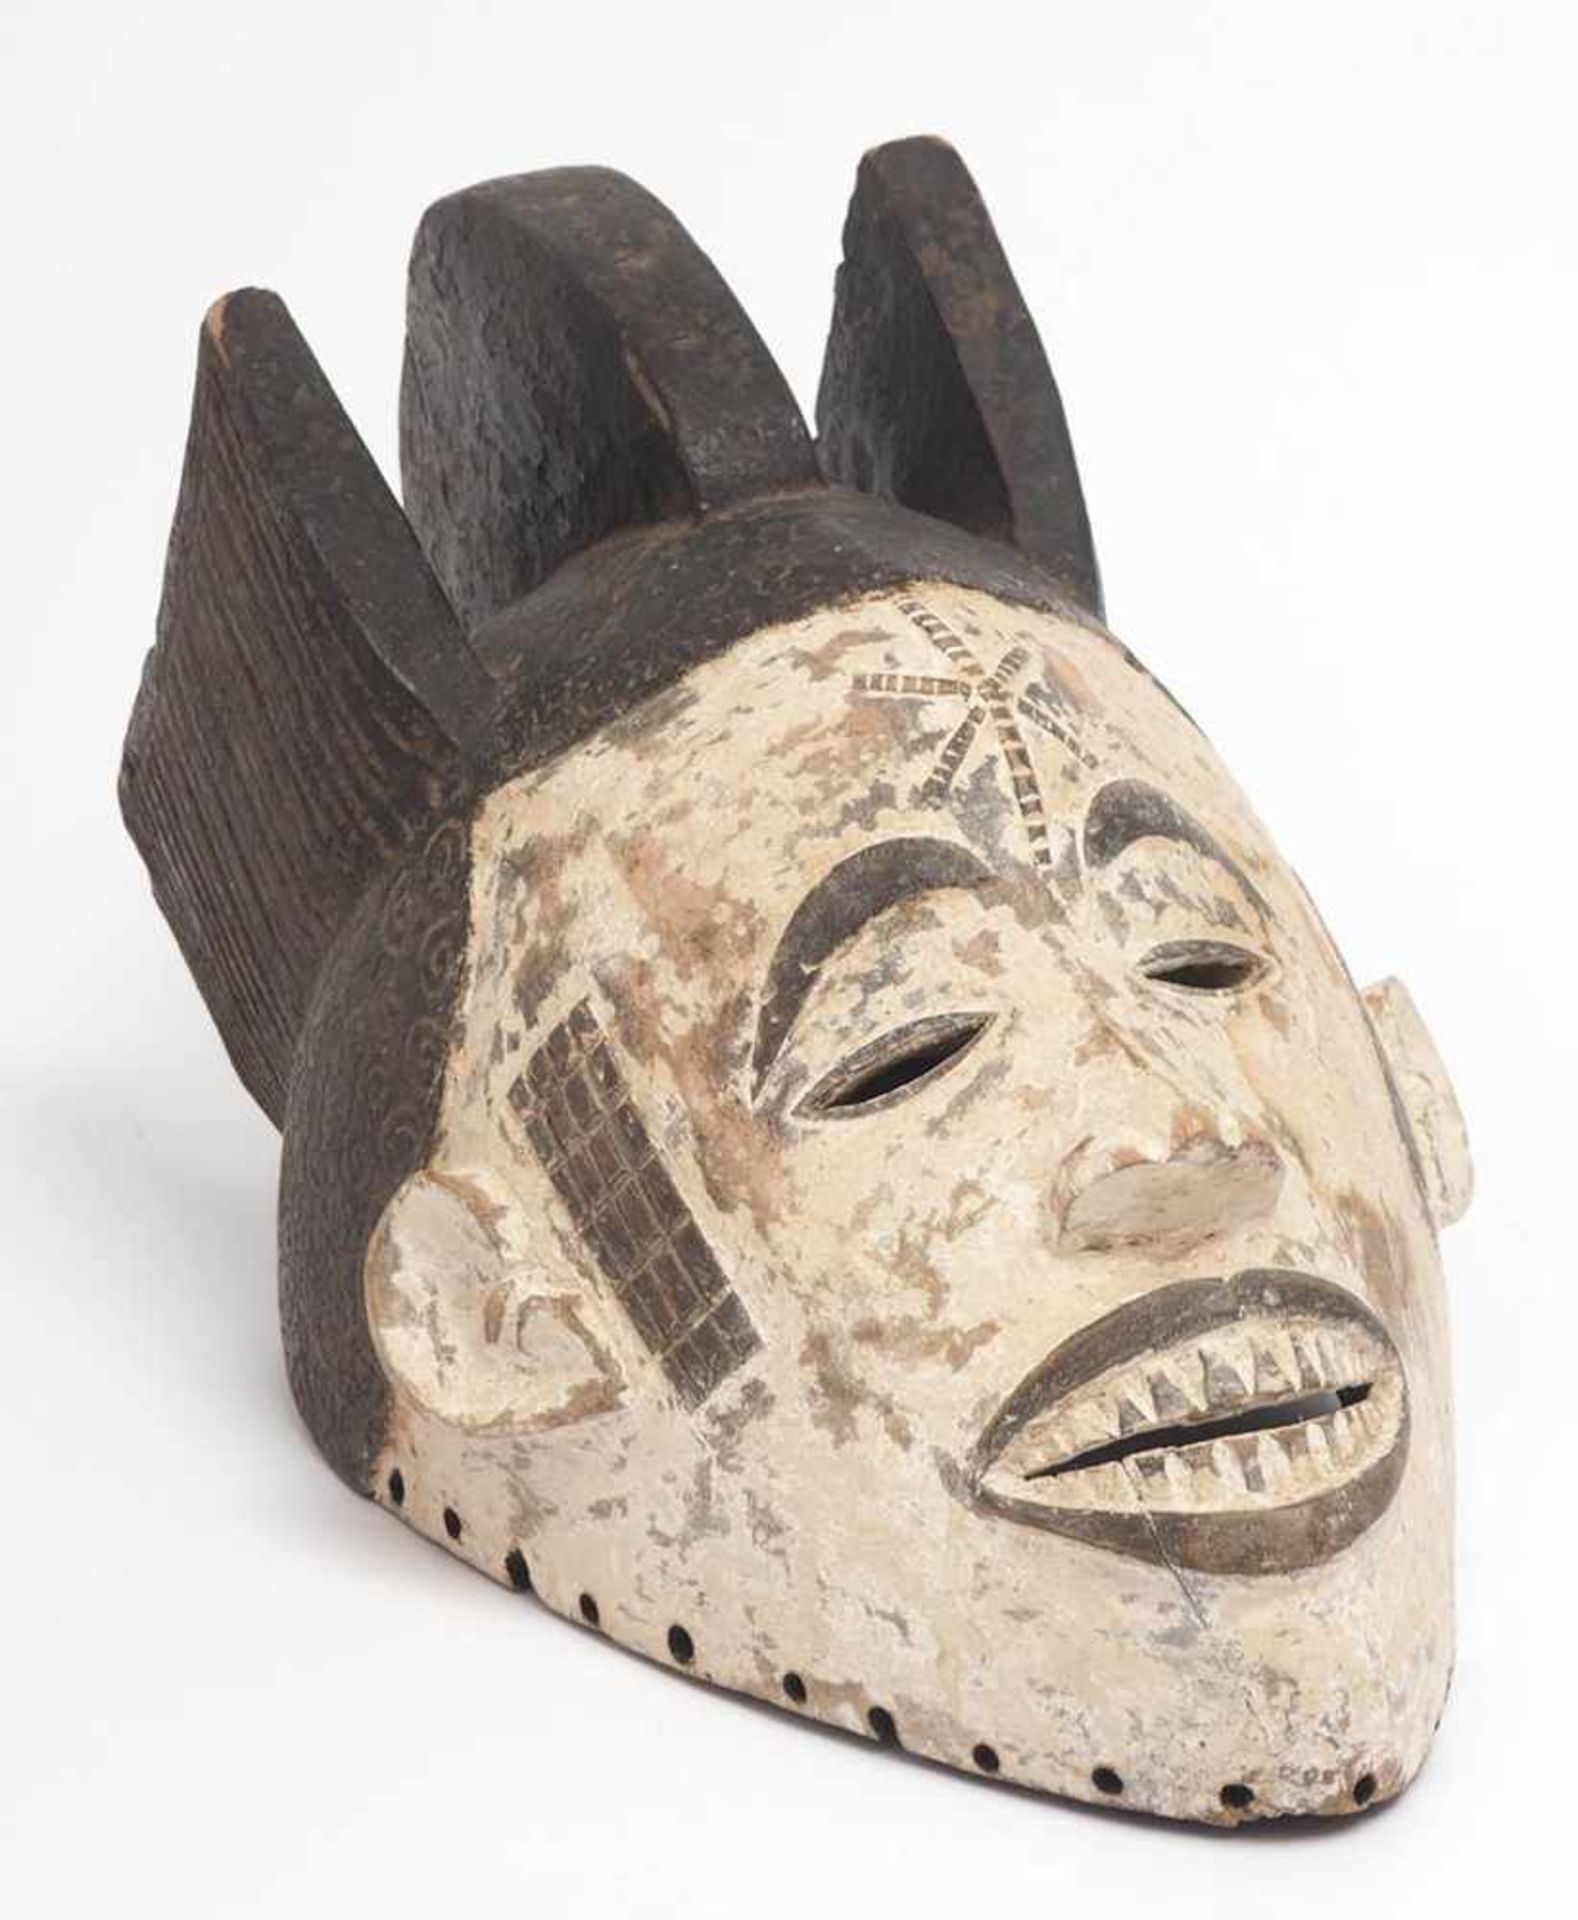 Maske des Mmwo-GeheimbundesIbo, Nigeria. Holz geschnitzt, partiell geschwärzt und weiß gekalkt. Höhe